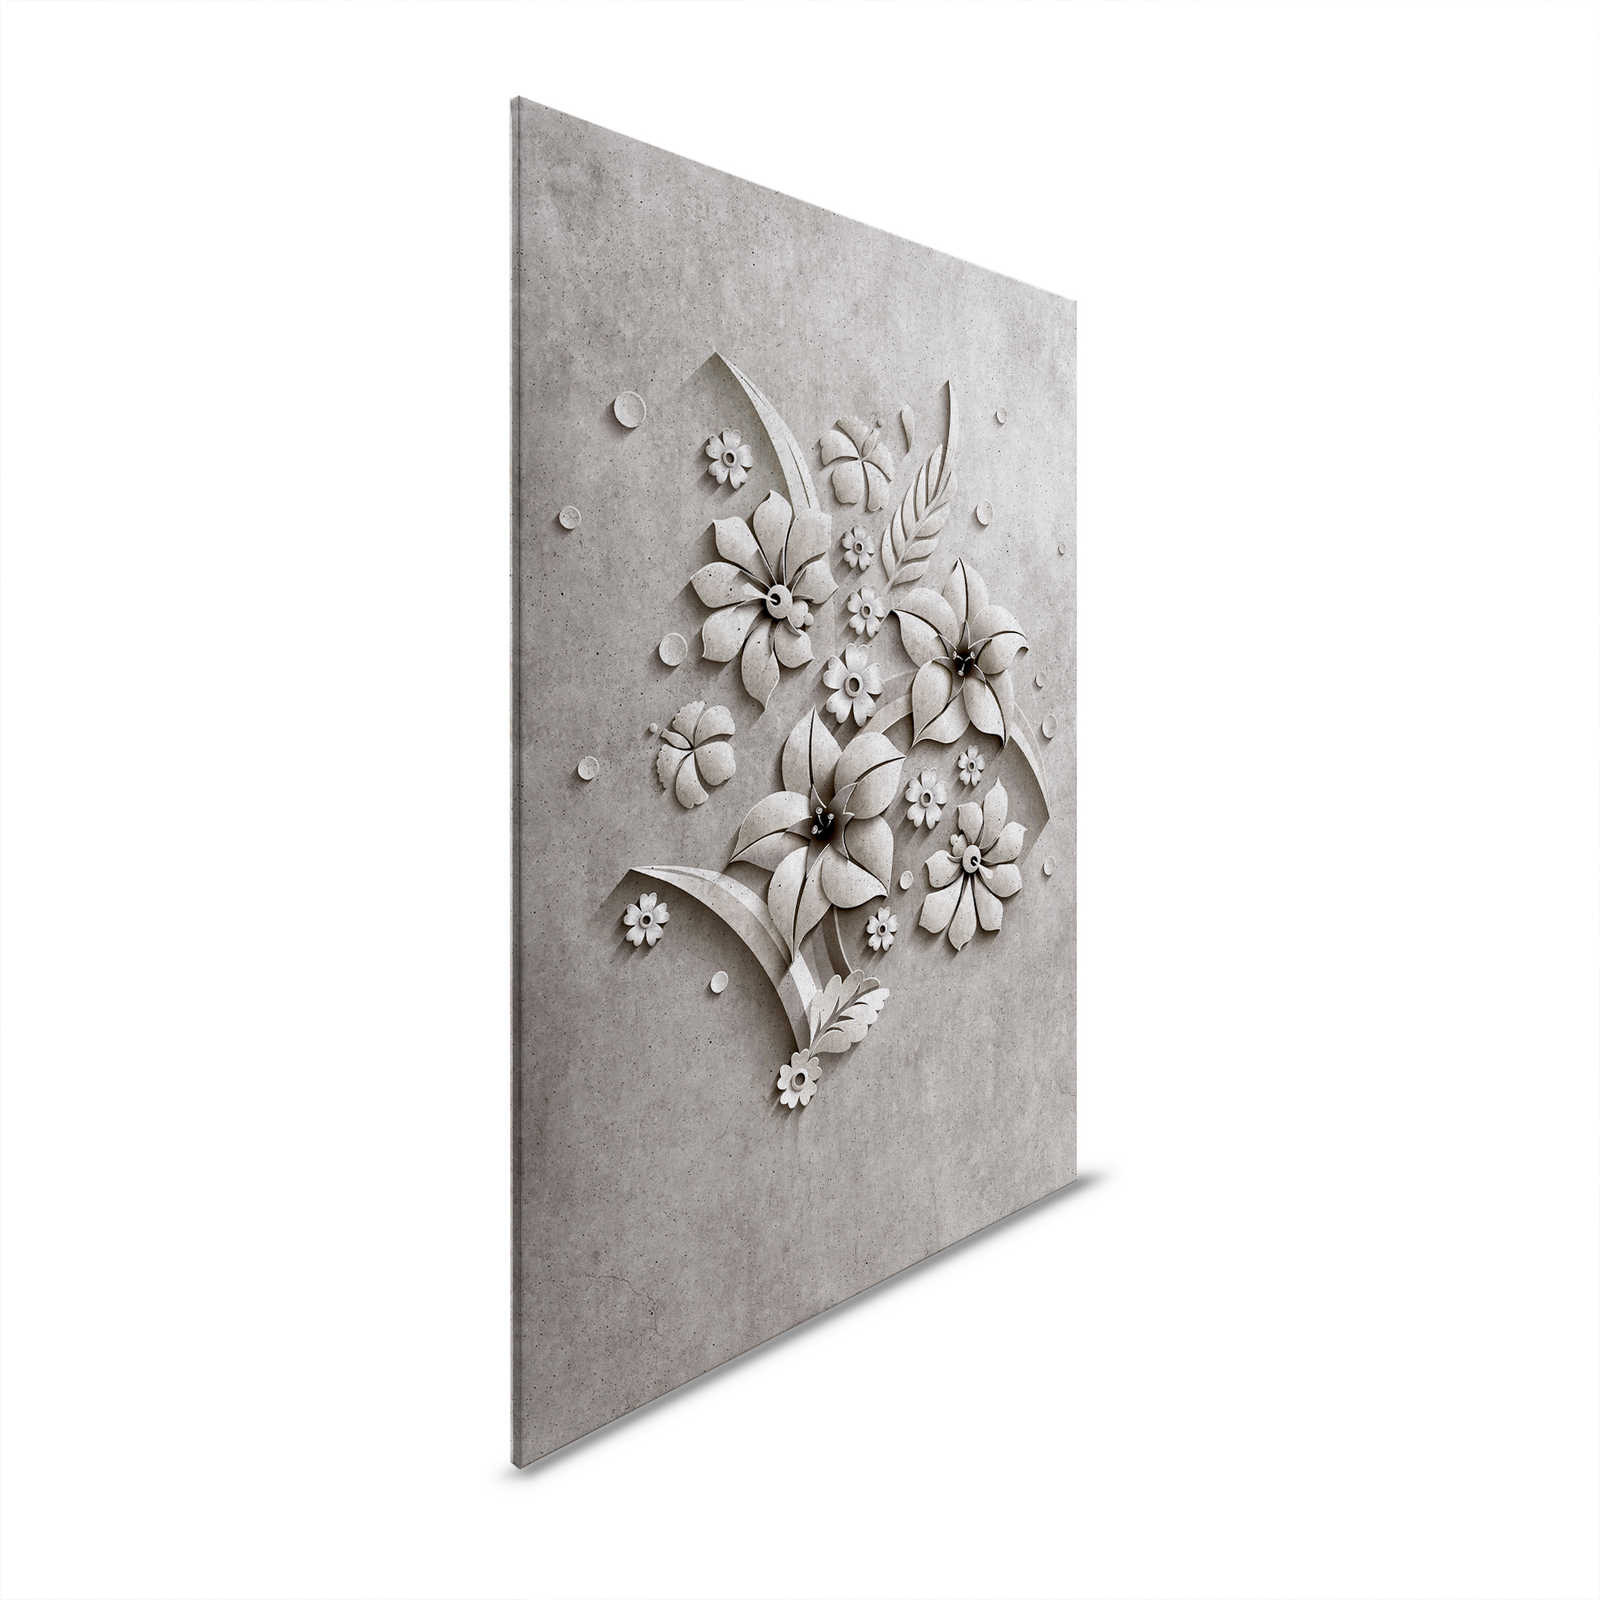 Relief 1 - Toile en béton À structure d'un relief de fleurs - 0,90 m x 0,60 m
